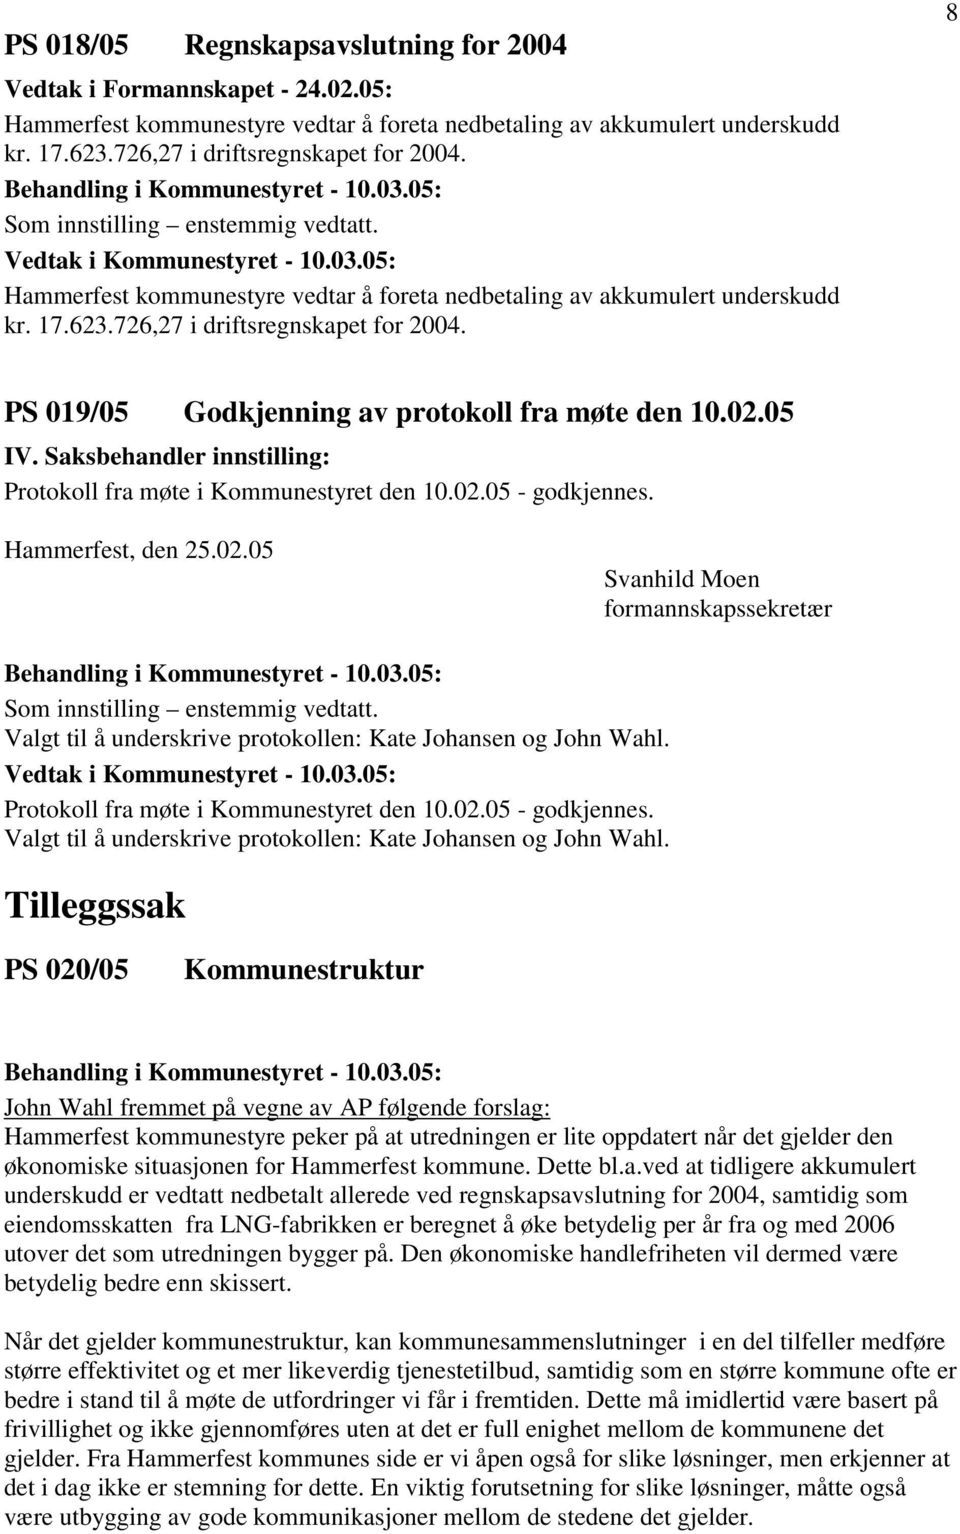 8 PS 019/05 Godkjenning av protokoll fra møte den 10.02.05 IV. Saksbehandler innstilling: Protokoll fra møte i Kommunestyret den 10.02.05 - godkjennes. Hammerfest, den 25.02.05 Svanhild Moen formannskapssekretær Som innstilling enstemmig vedtatt.